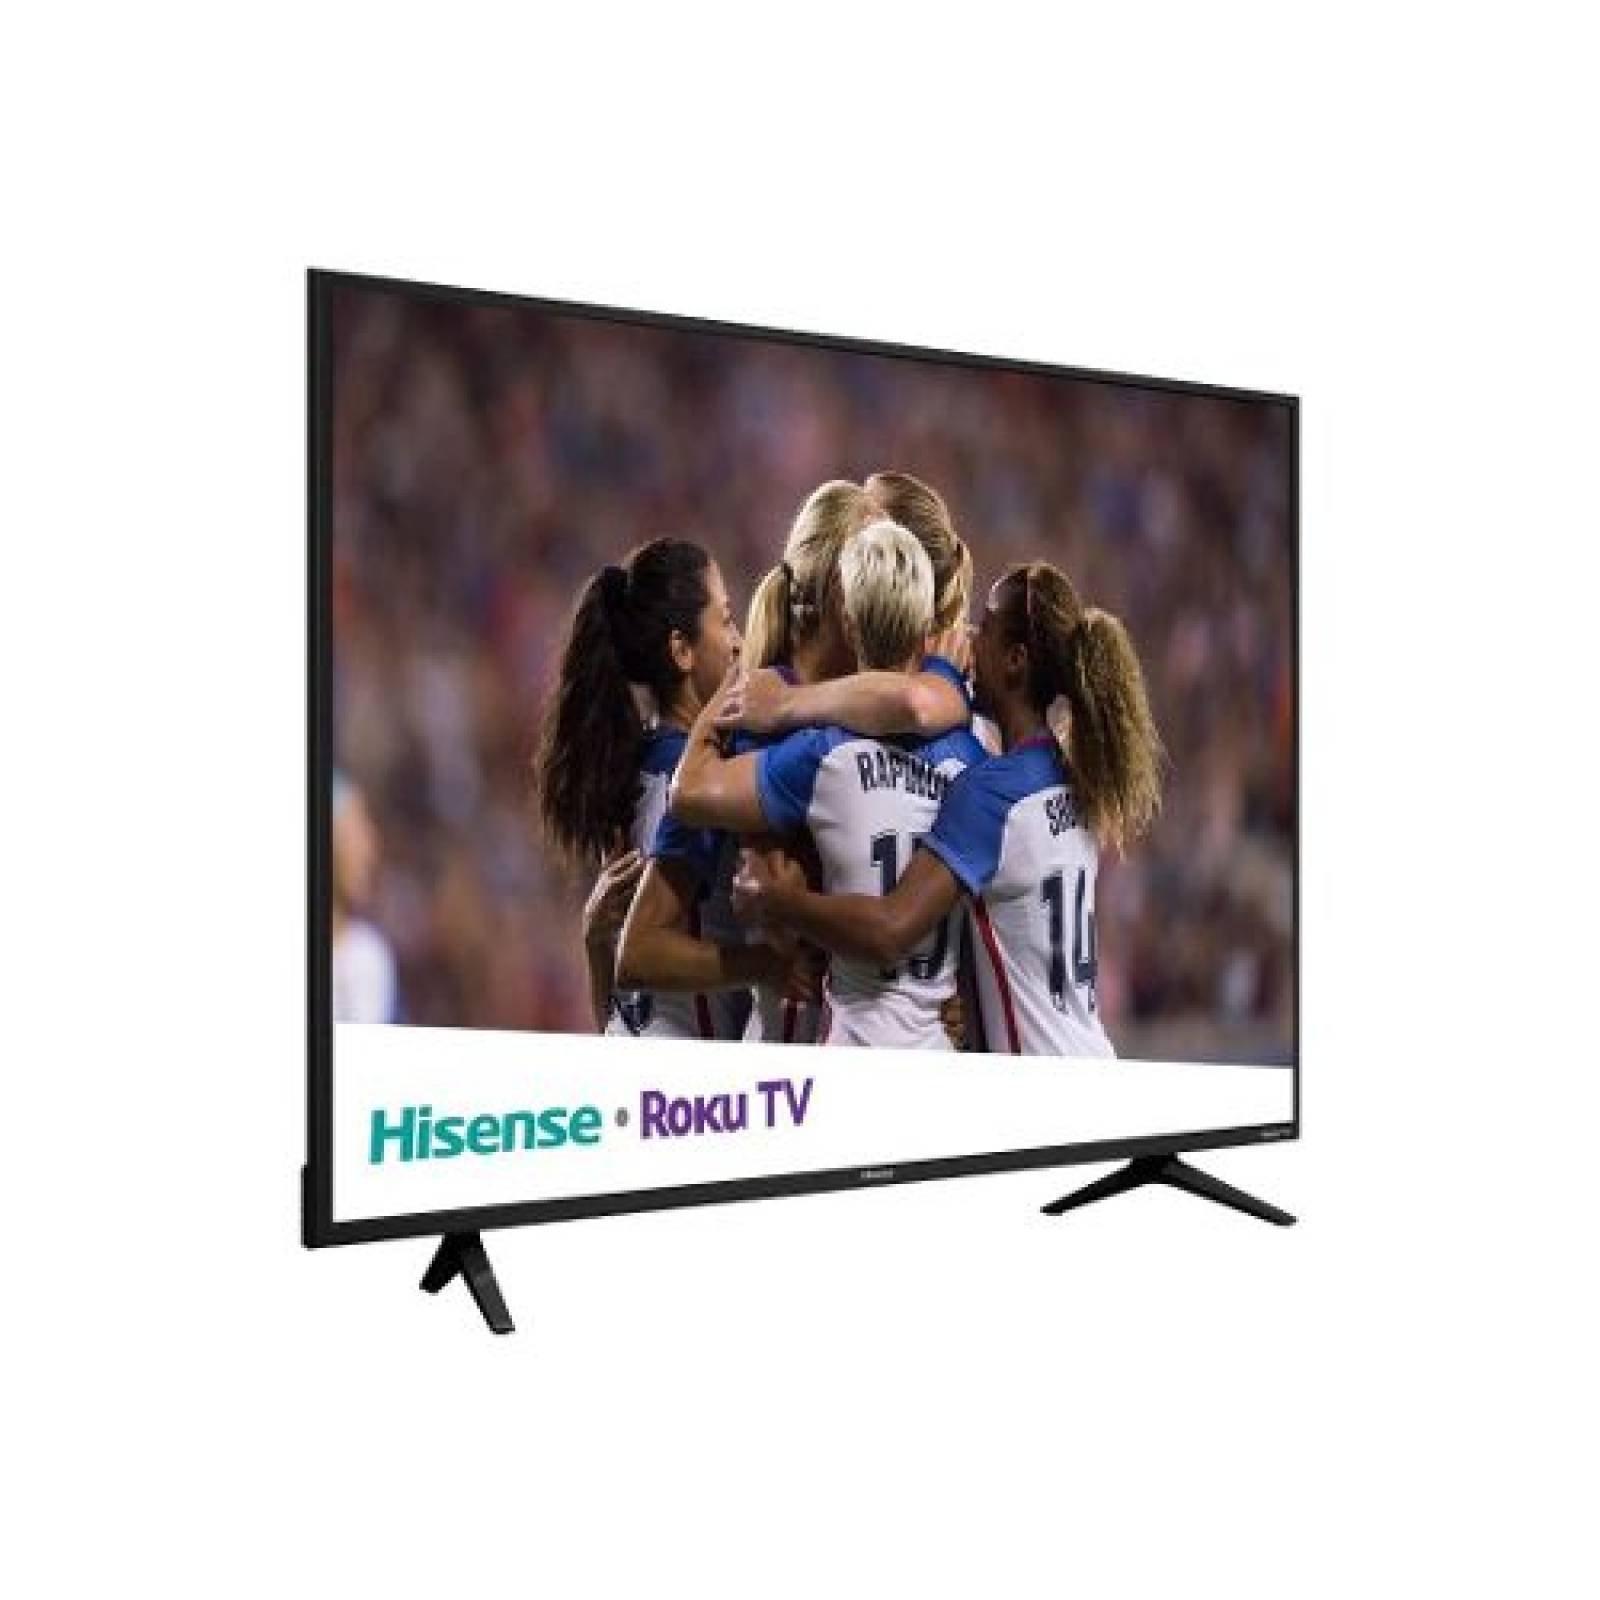 TV HISENSE 55 LED 4K 3840X2160P SMART TV